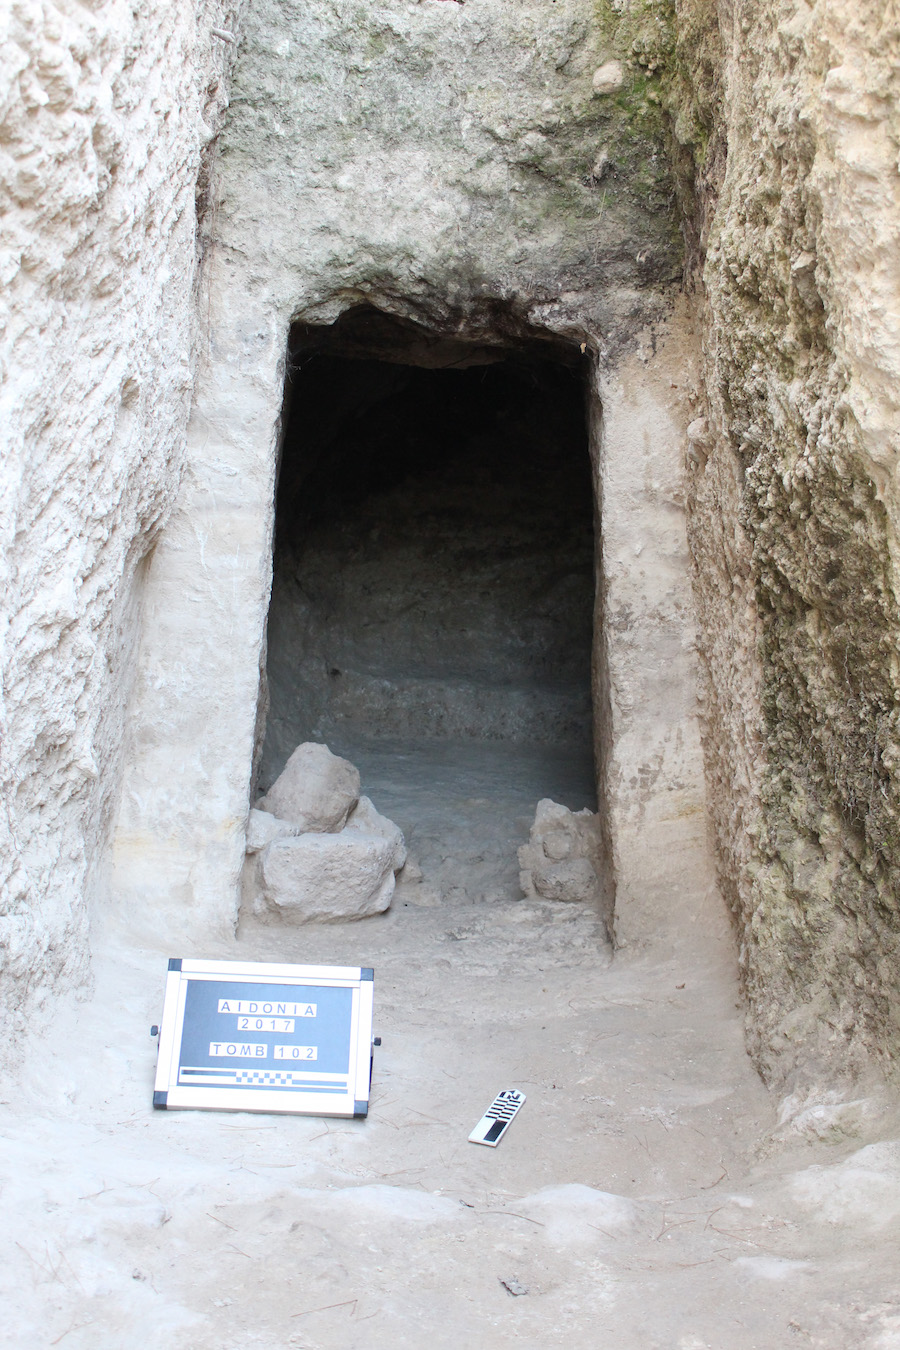 Νέα ταφικά μνημεία αποκαλύφθηκαν στο μυκηναϊκό νεκροταφείο των Αηδονιών